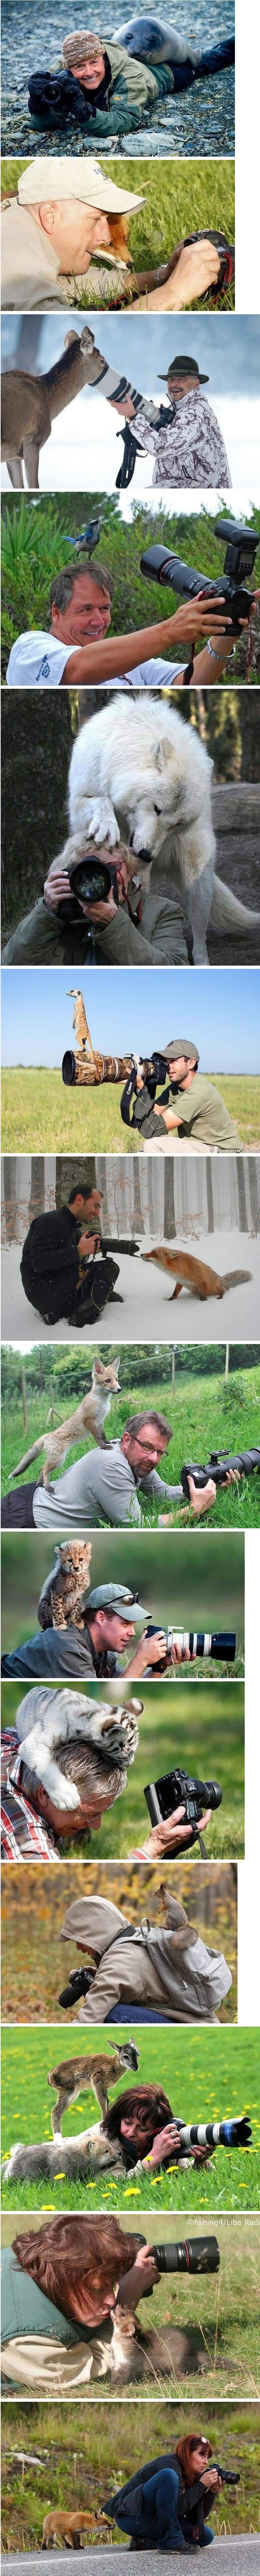 야생동물 촬영 중 나타난 동물들